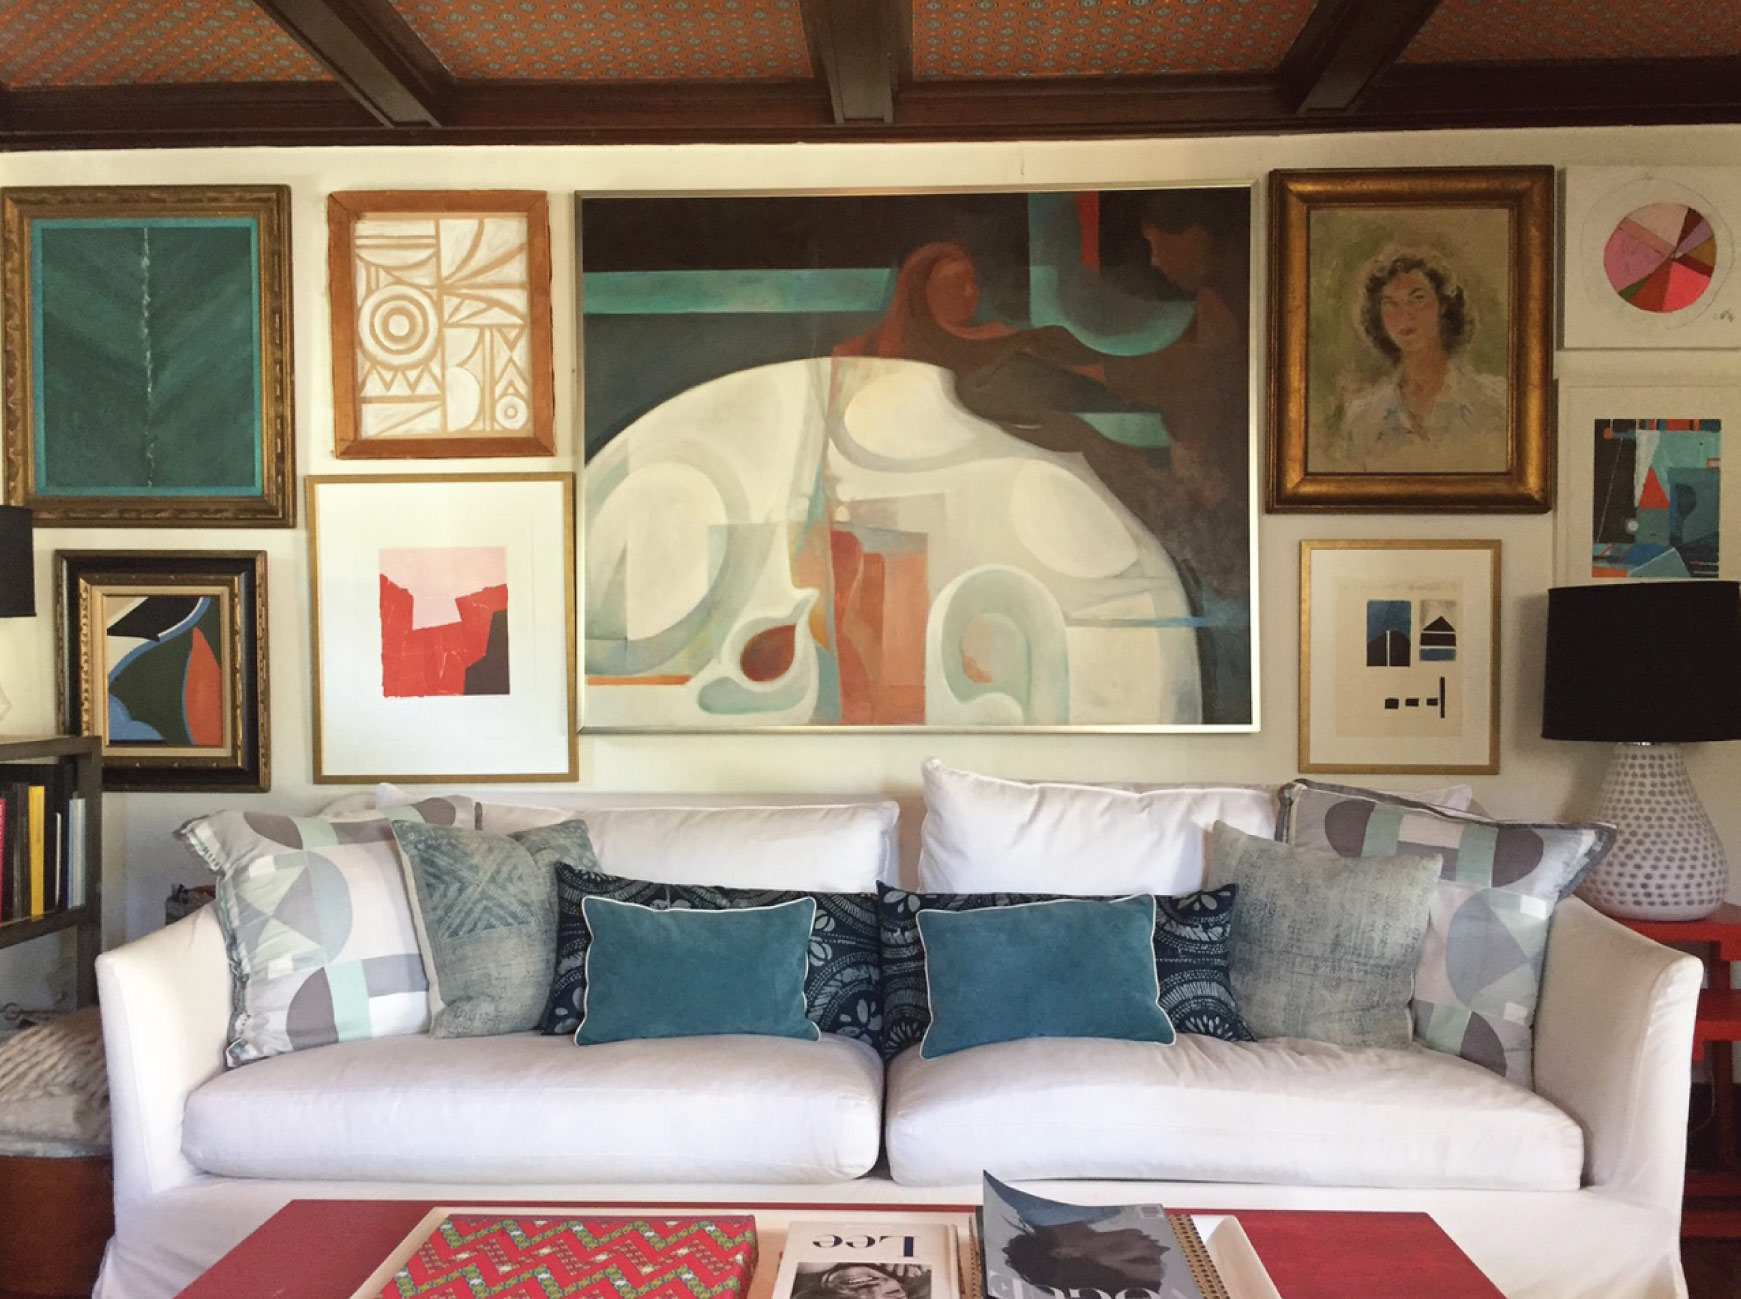 Saulsalito livingroom & art